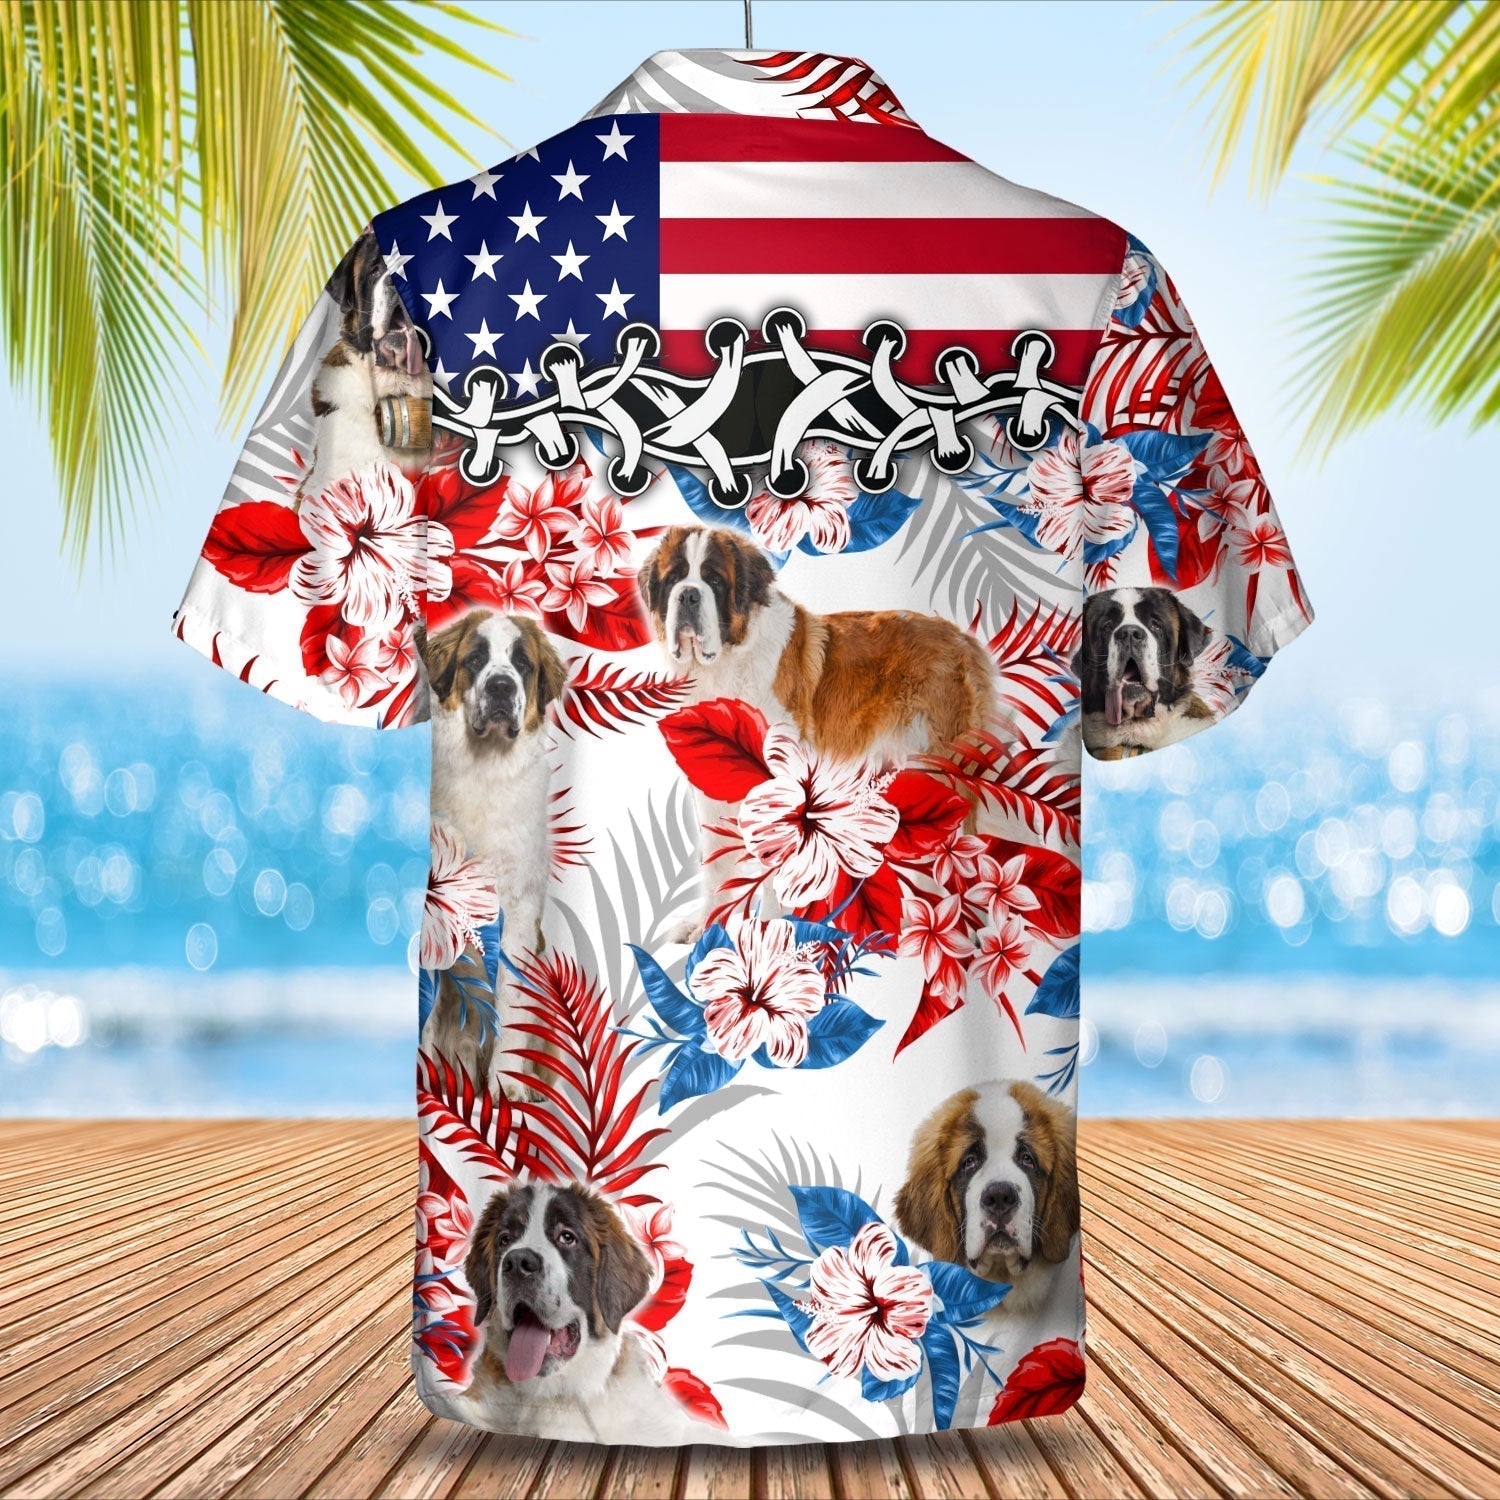 St Bernard Hawaiian Shirt - Gift for Summer/ Summer aloha shirt/ Hawaiian shirt for Men and women